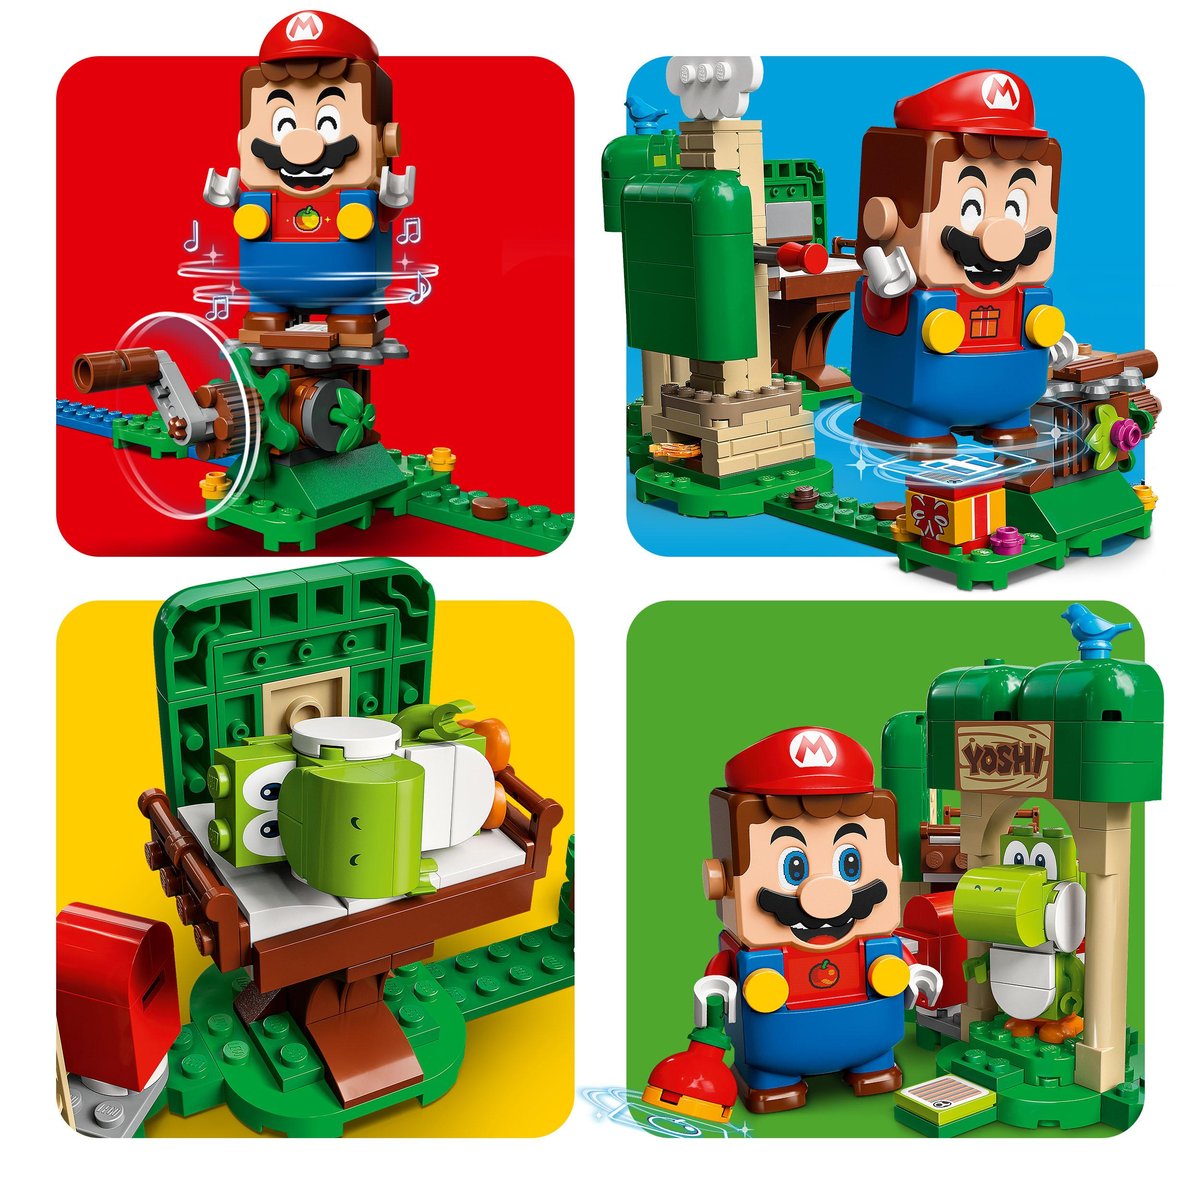 Super Mario Expansão A Casa dos Presentes de Yoshi - 71406 - M.Shop -  Brinquedos de Montar e Desmontar - Magazine Luiza